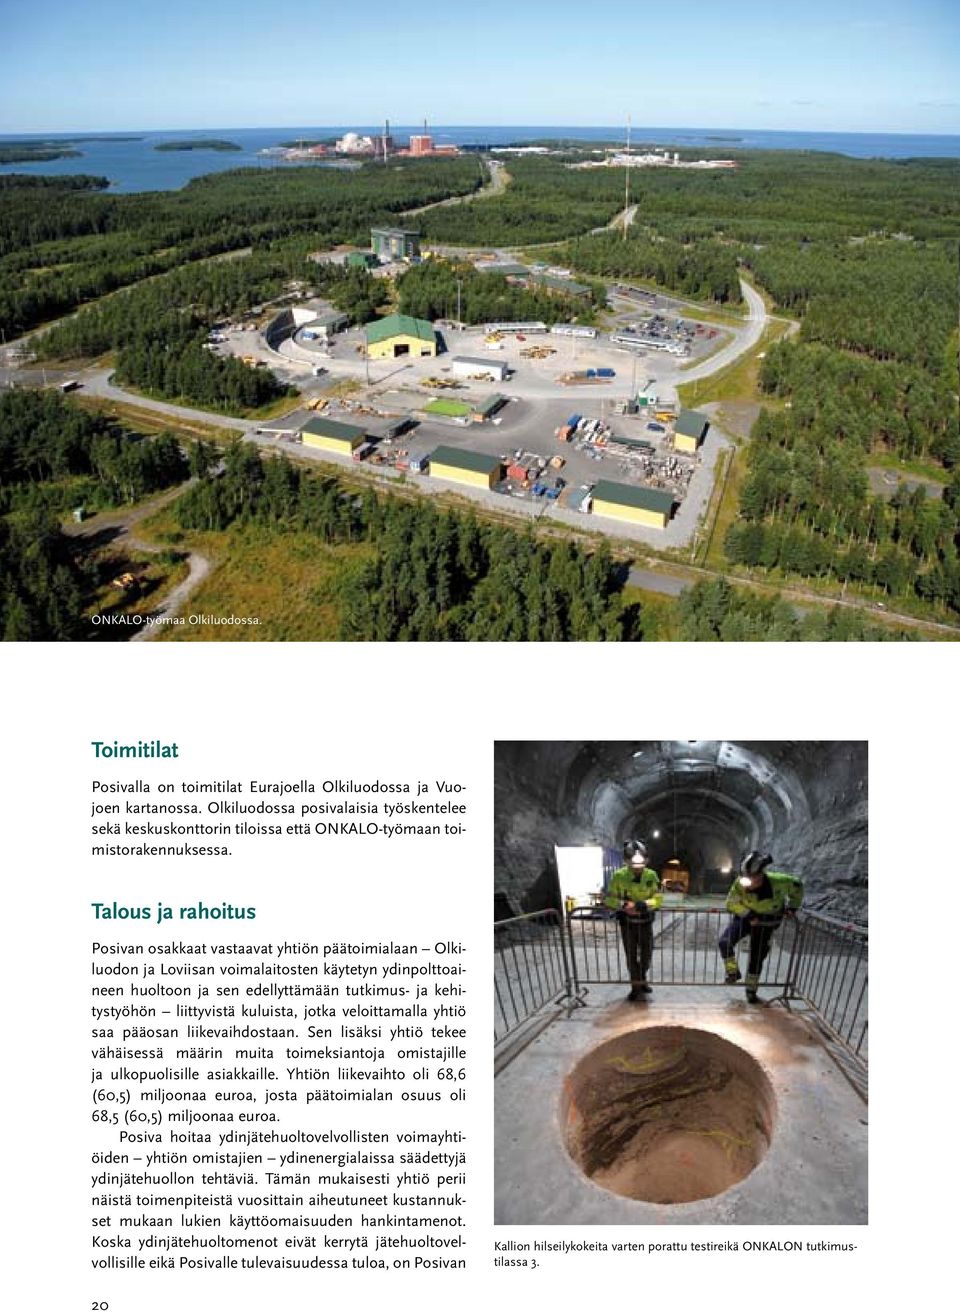 Talous ja rahoitus Posivan osakkaat vastaavat yhtiön päätoimialaan Olkiluodon ja Loviisan voimalaitosten käytetyn ydinpolttoaineen huoltoon ja sen edellyttämään tutkimus- ja kehitystyöhön liittyvistä